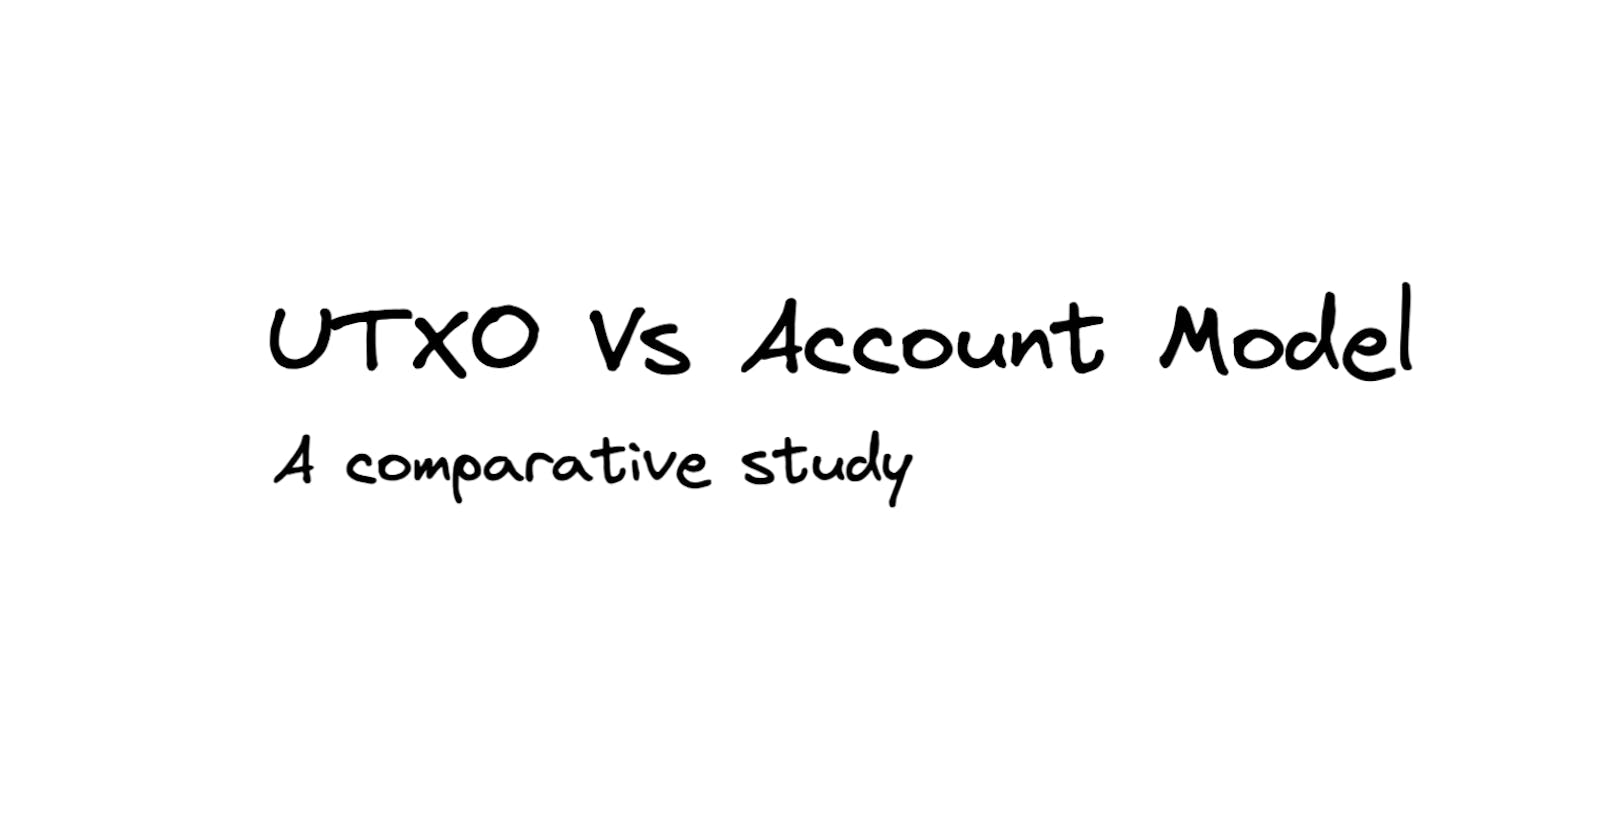 UTXO Model vs. Account Model